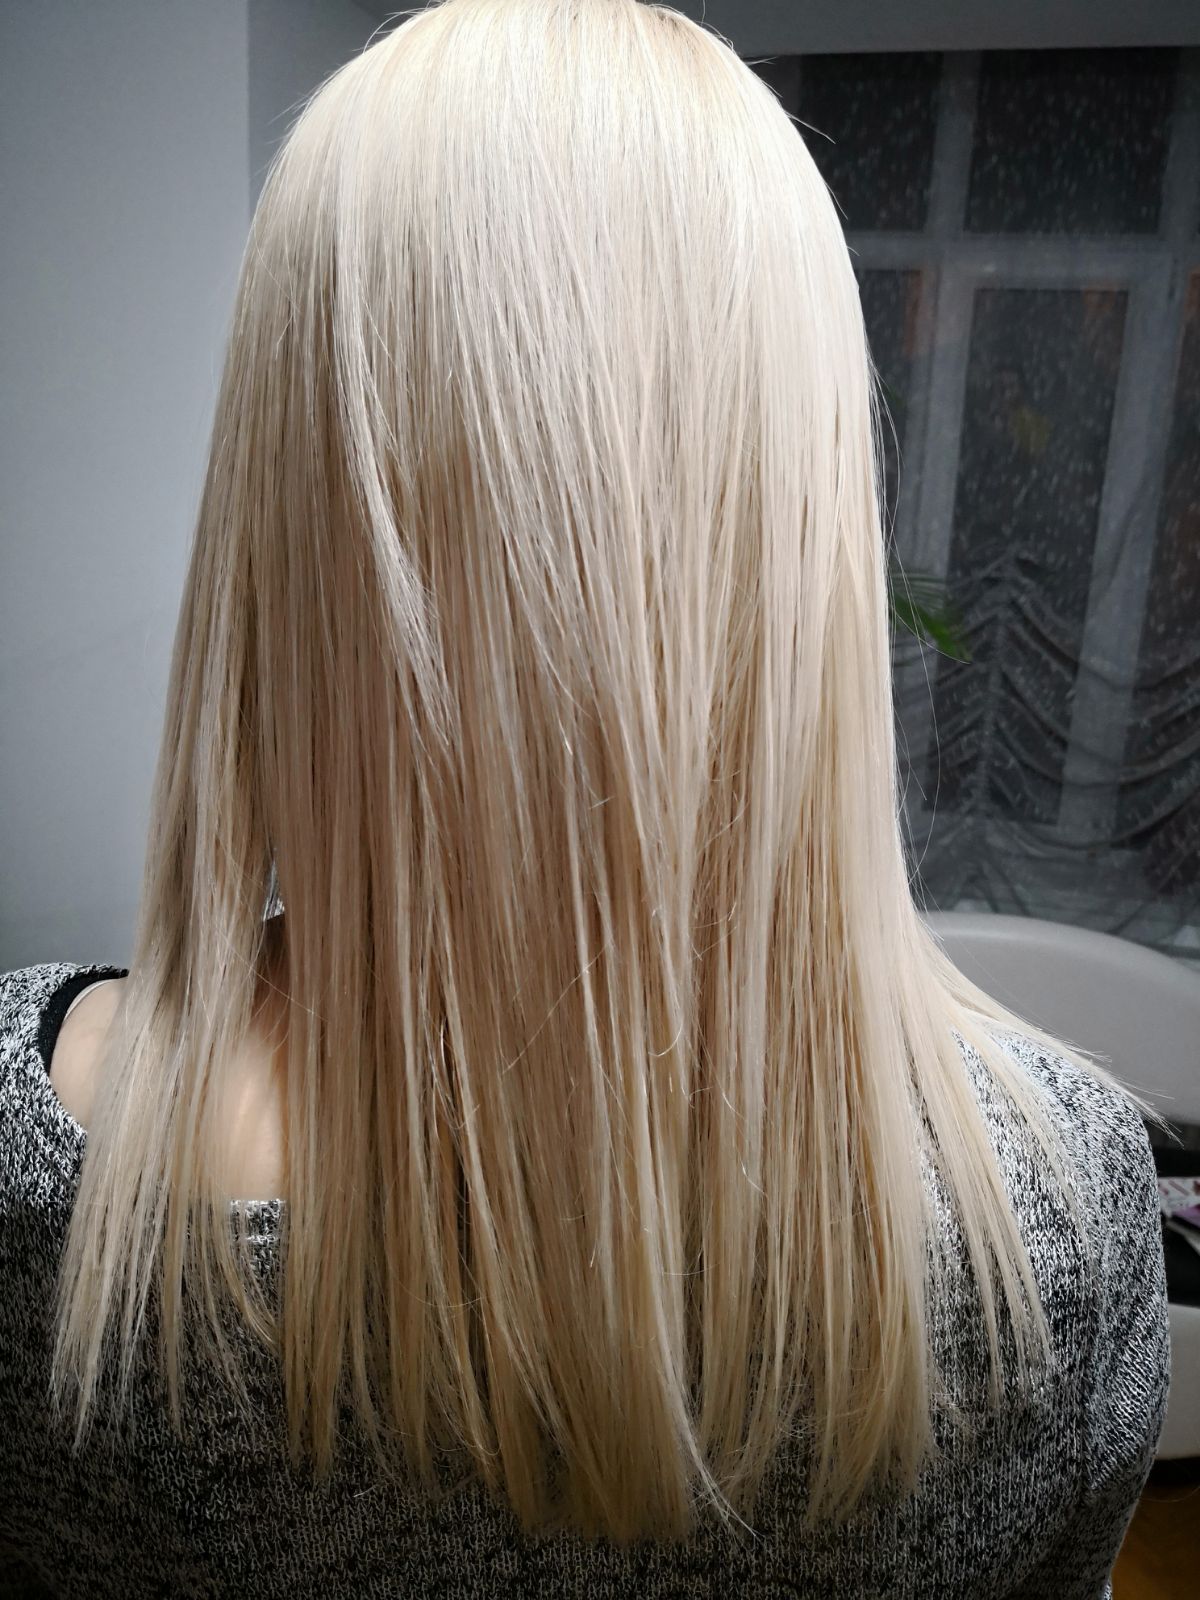 blond hair ksister's salon